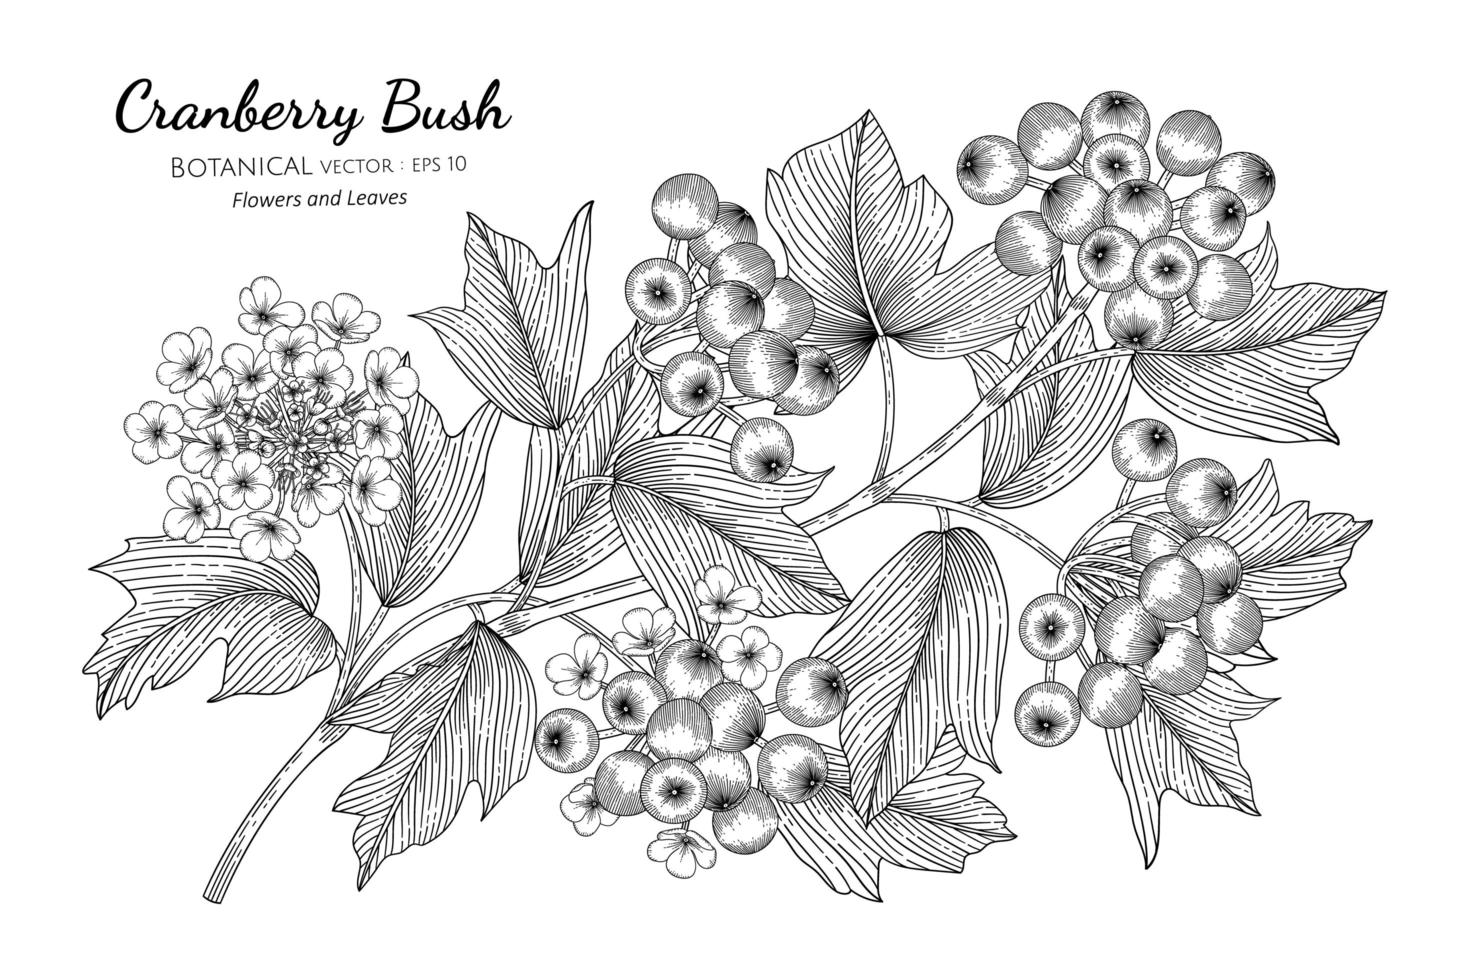 arbustos de cranberry desenhados à mão vetor